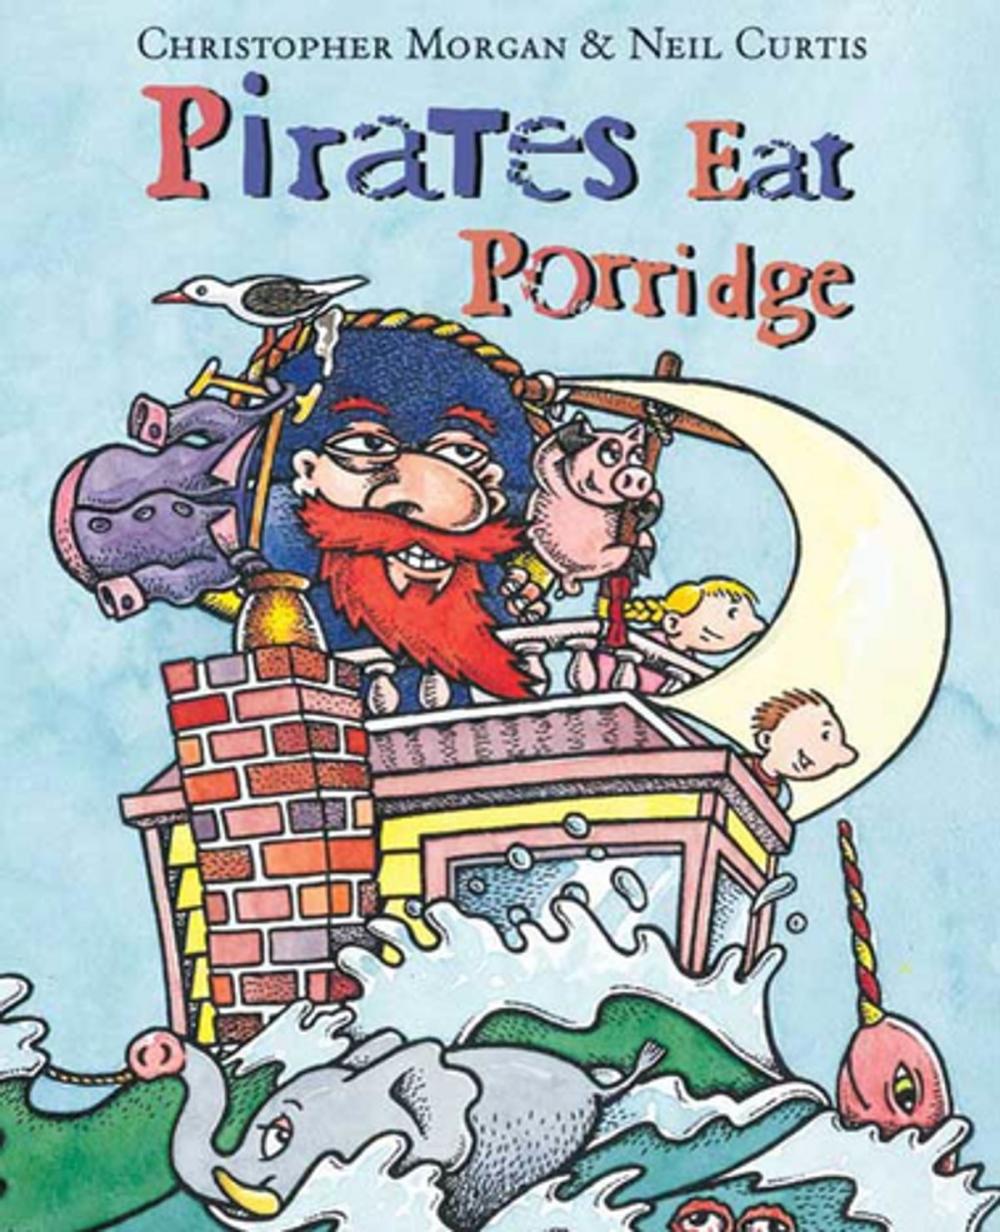 Big bigCover of Pirates Eat Porridge